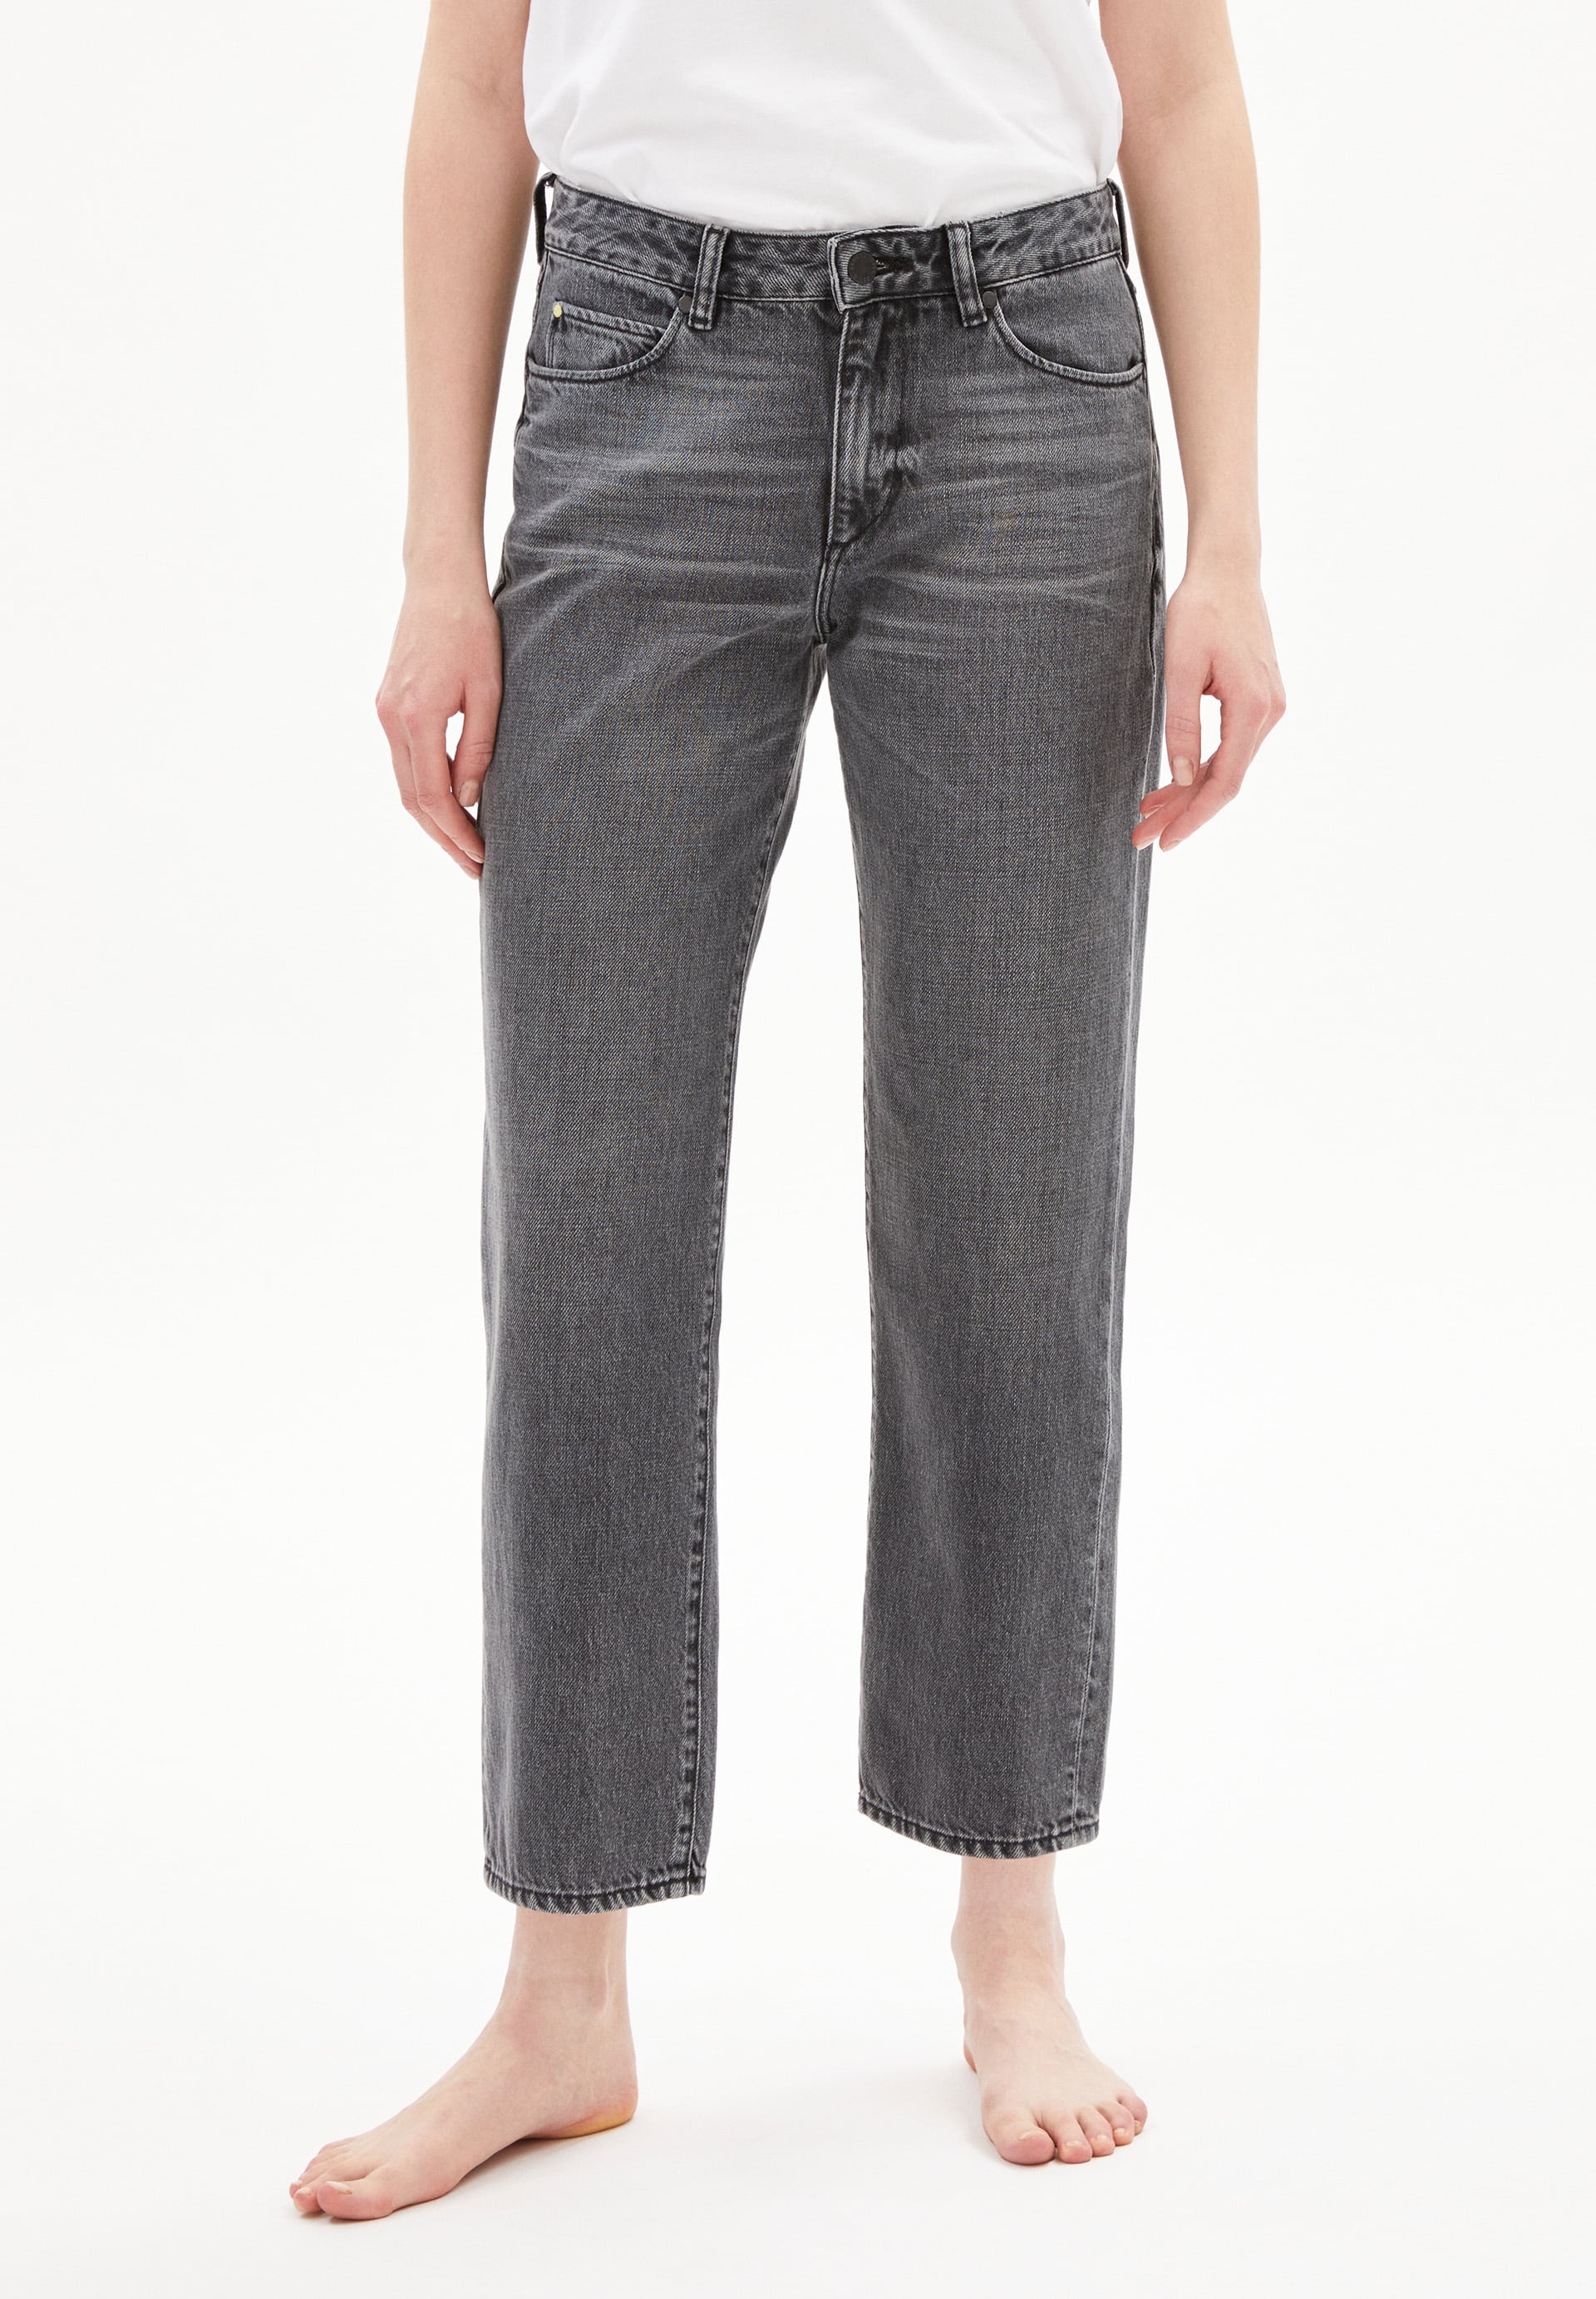 Jeans FJELLAA CROPPED in clouded grey von ARMEDANGELS günstig online kaufen